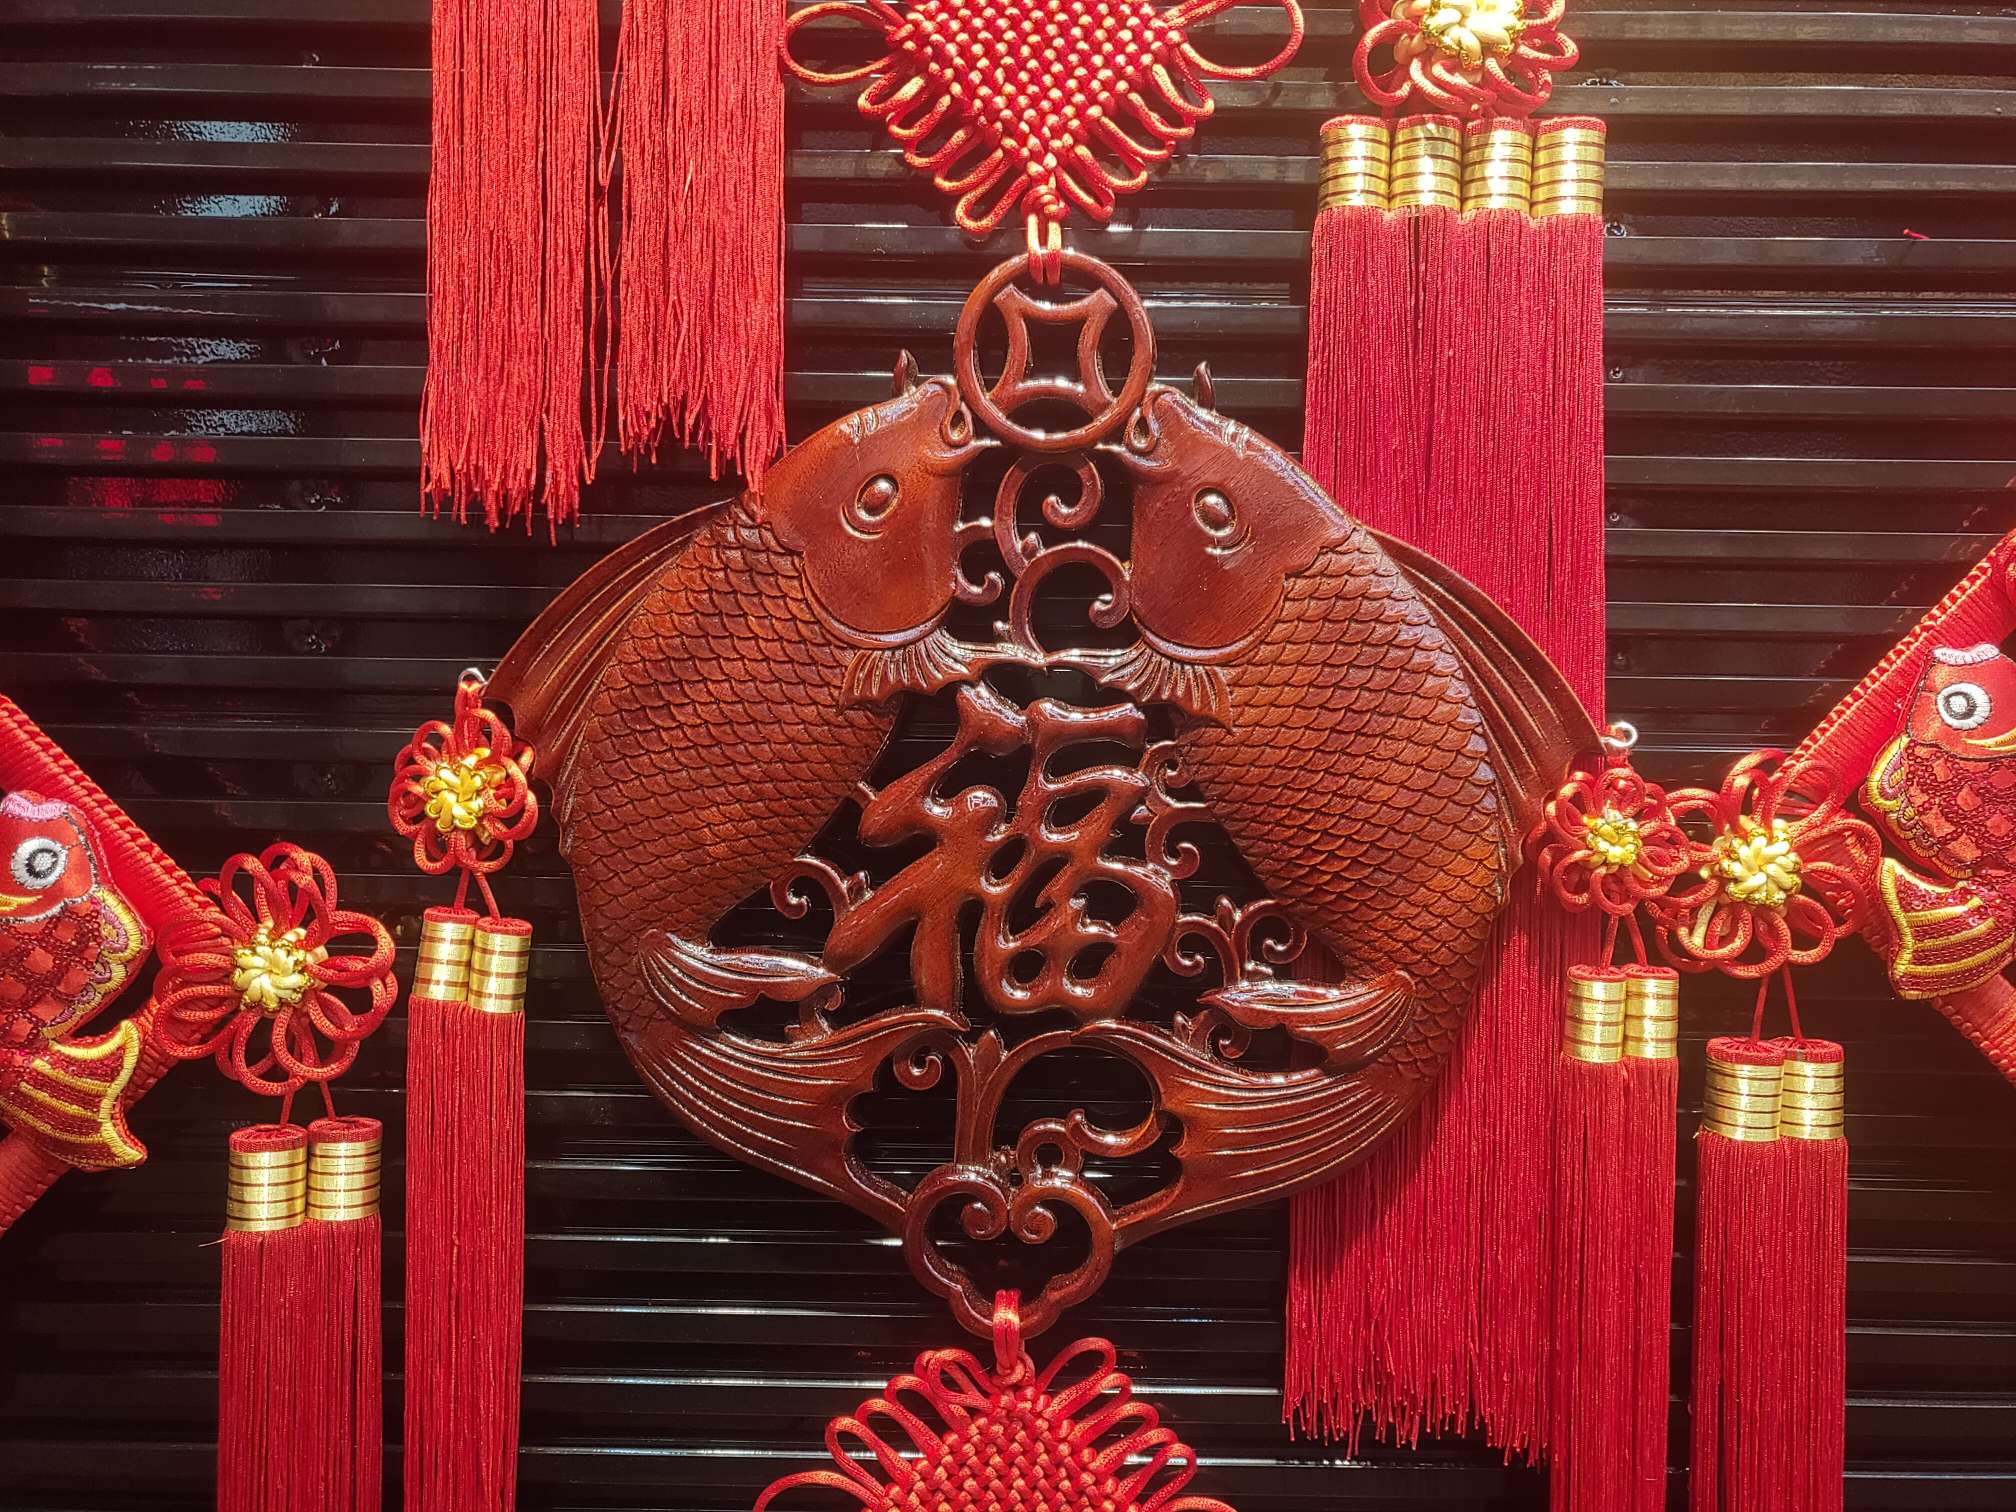 40#方形木雕38春节喜庆用品节日用品红木精品图